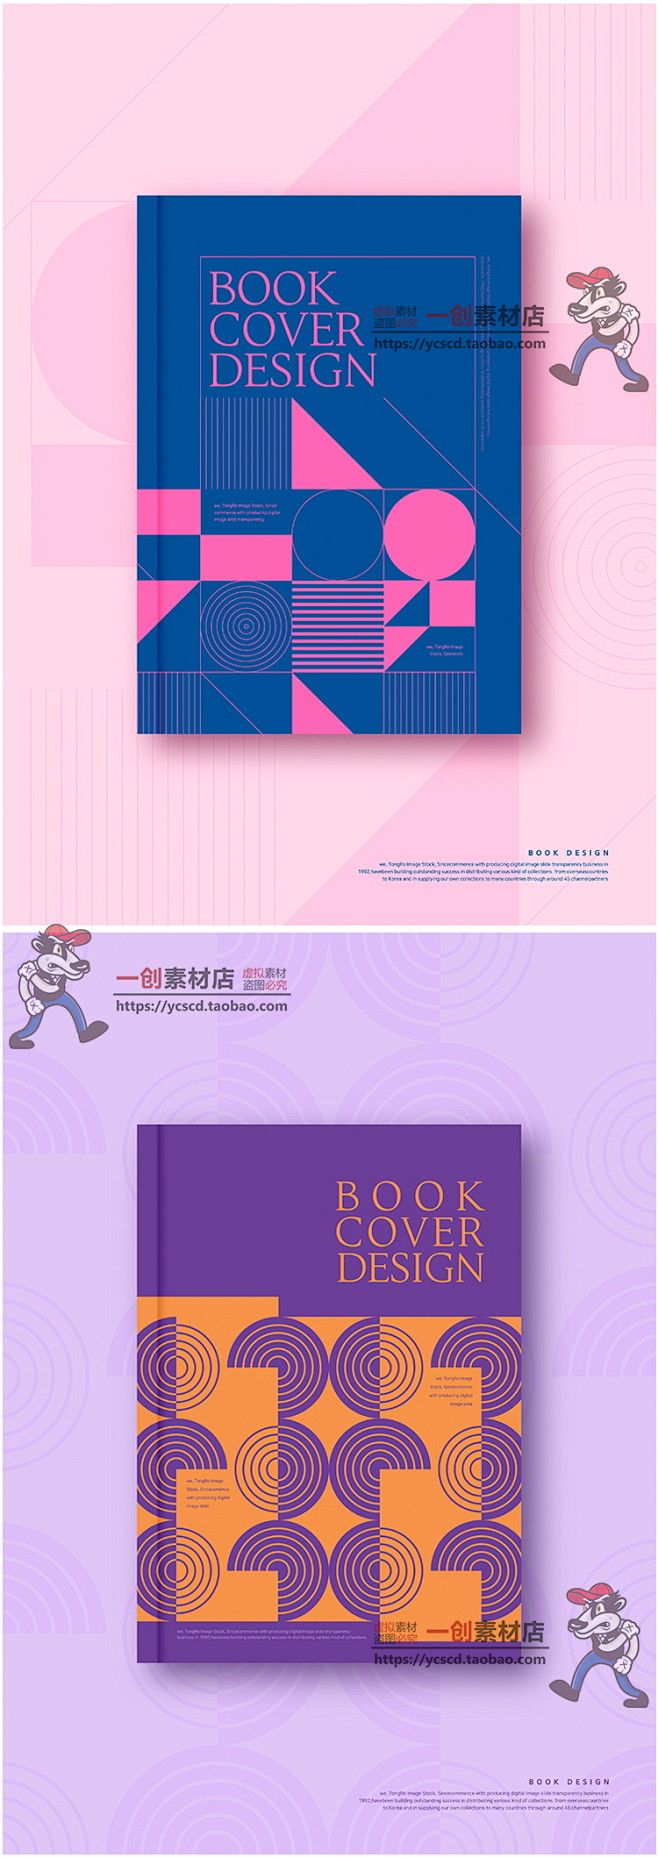 26时尚高端炫彩几何图形杂志书籍画册封面...